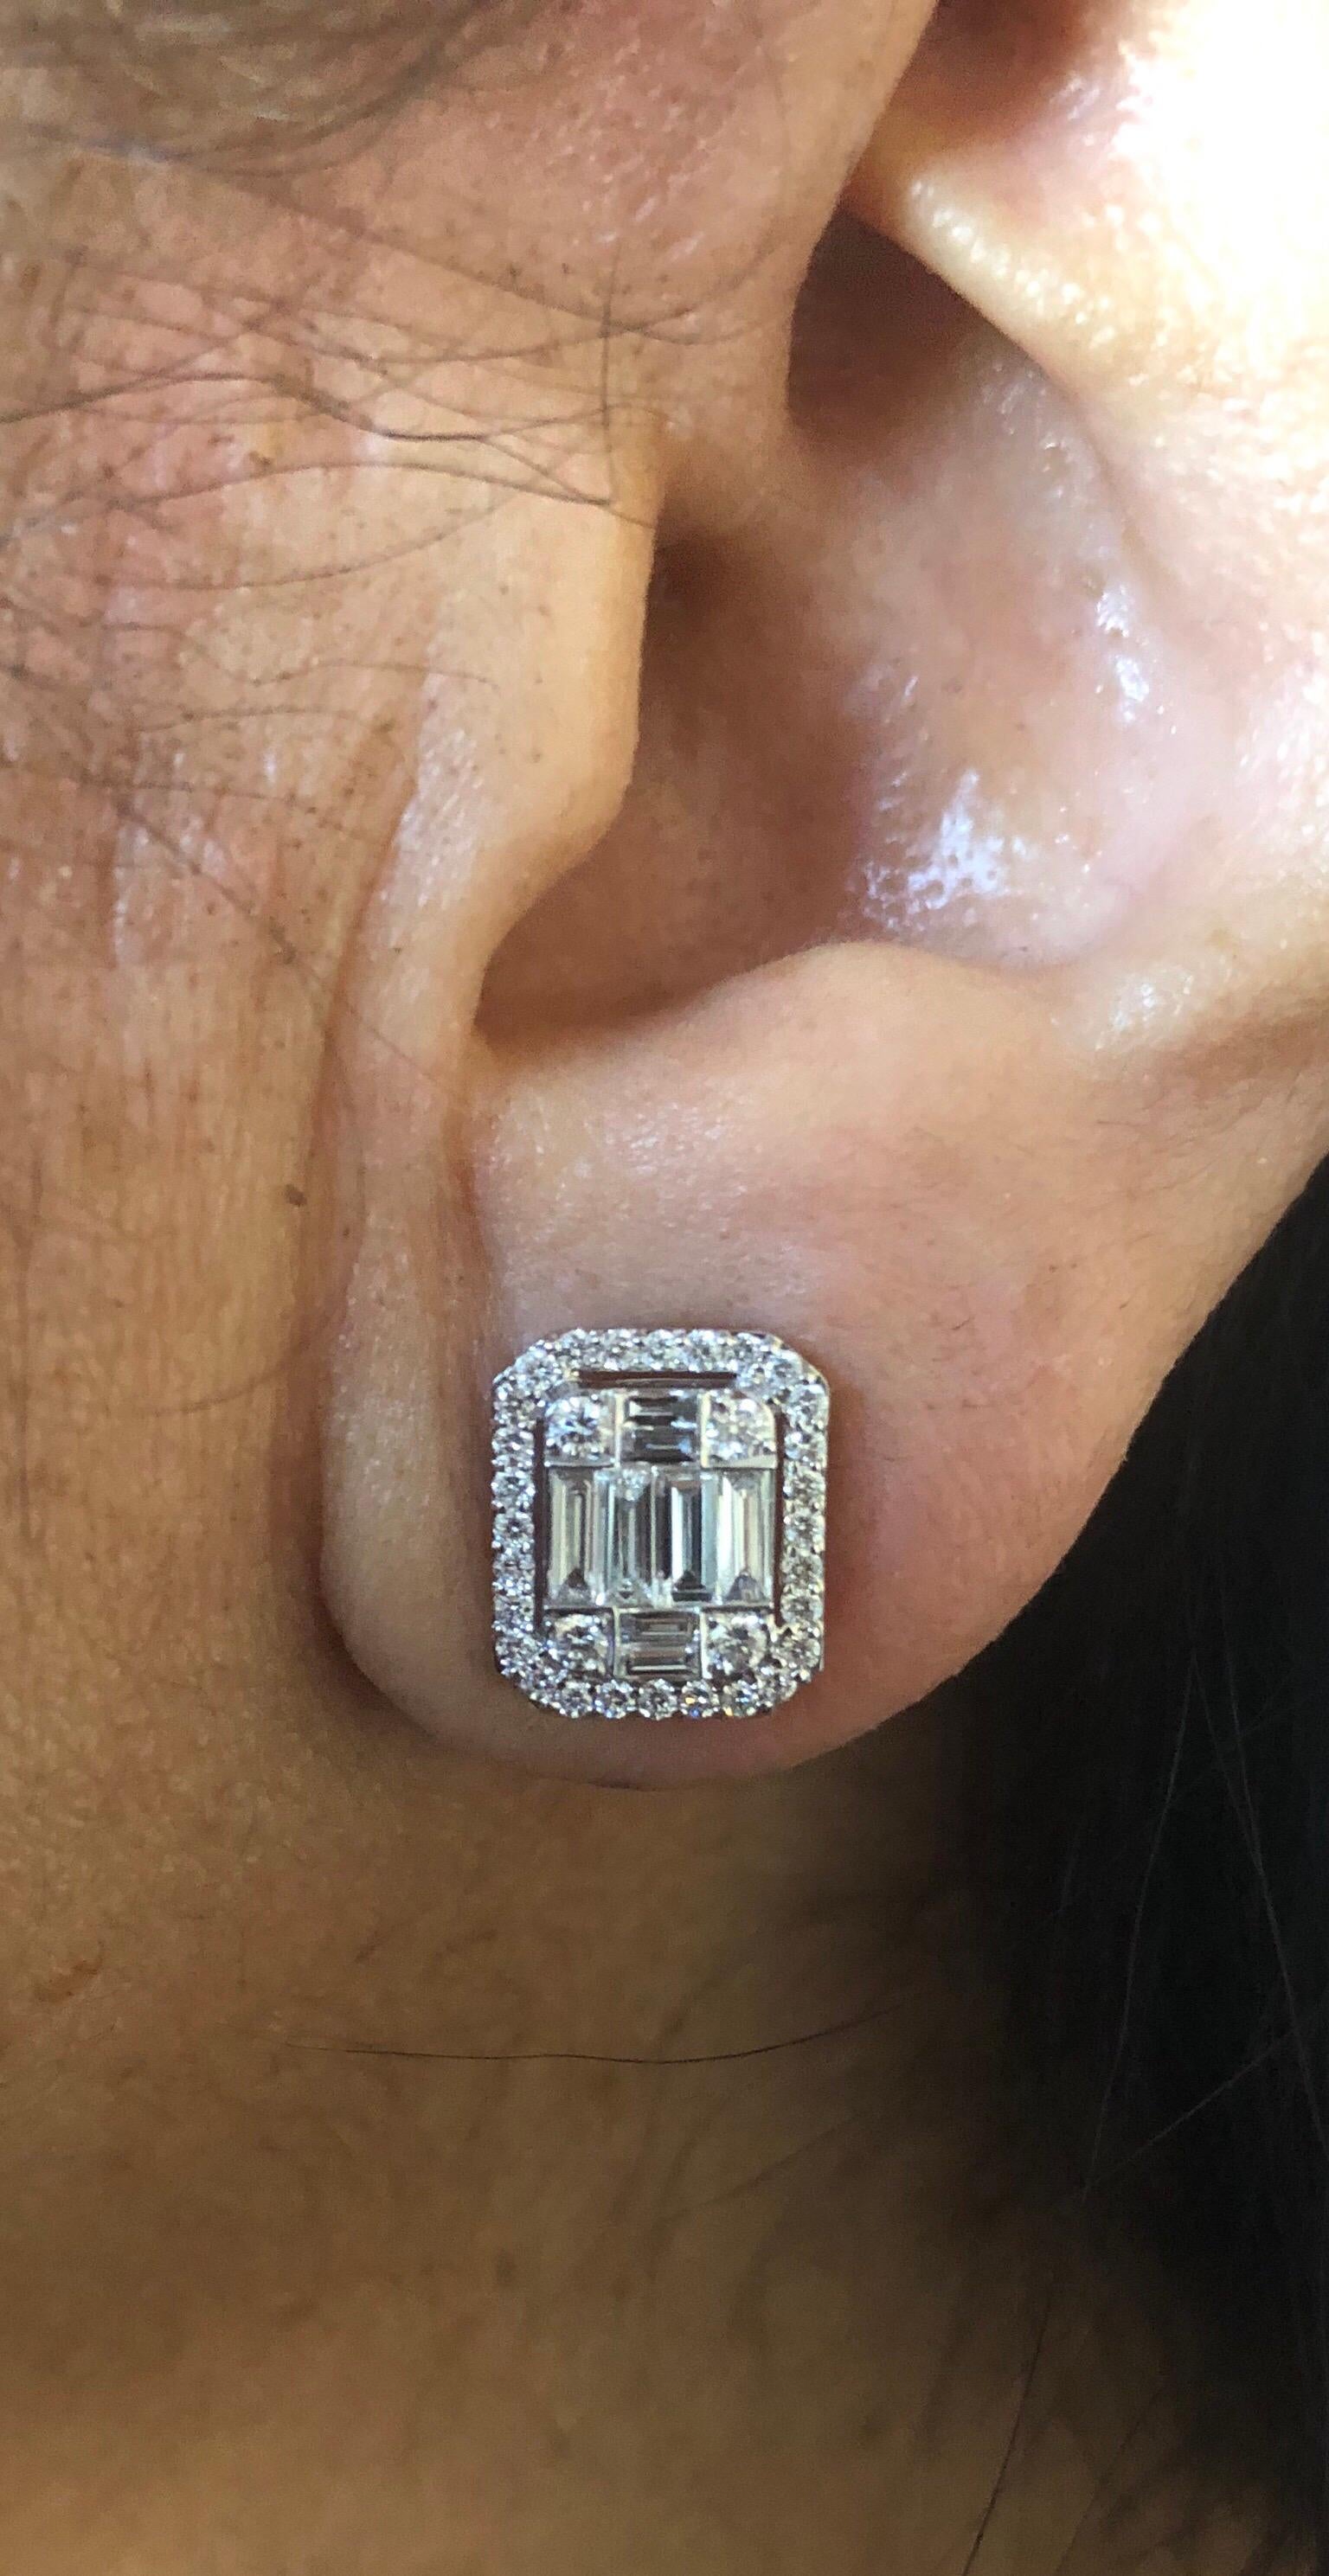 Boucles d'oreilles en forme de grappe d'émeraudes serties en or blanc 18 carats. Les boucles d'oreilles sont serties d'une grappe de diamants baguettes et ronds pour créer l'illusion d'une seule taille émeraude. Cette boucle d'oreille a la taille